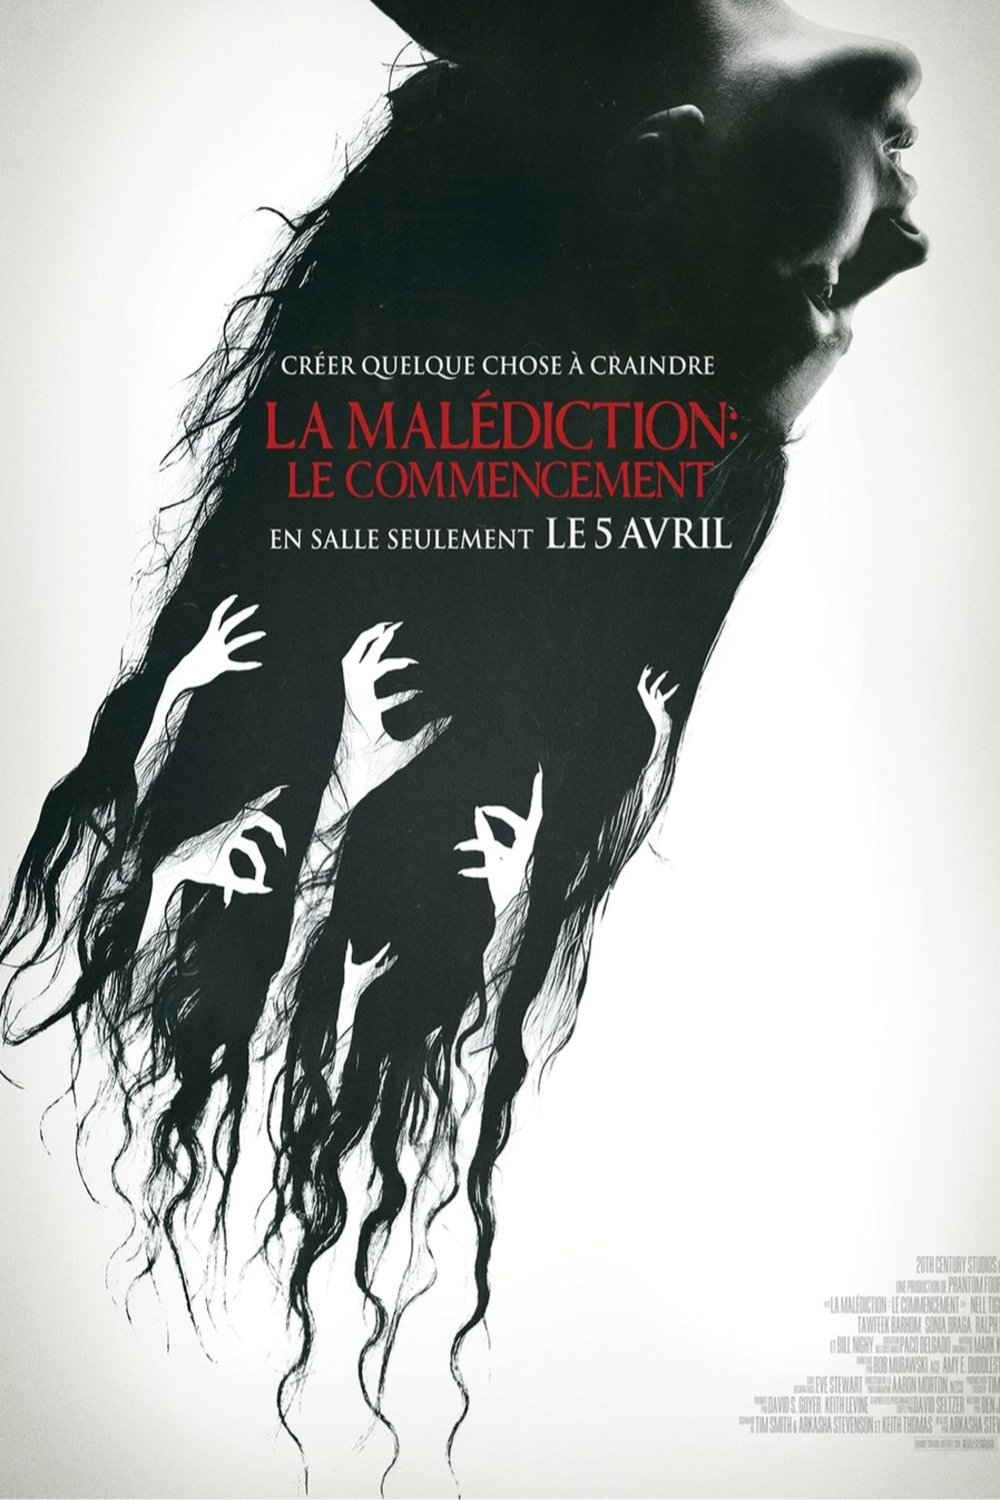 Poster of the movie La malédiction: Le commencement